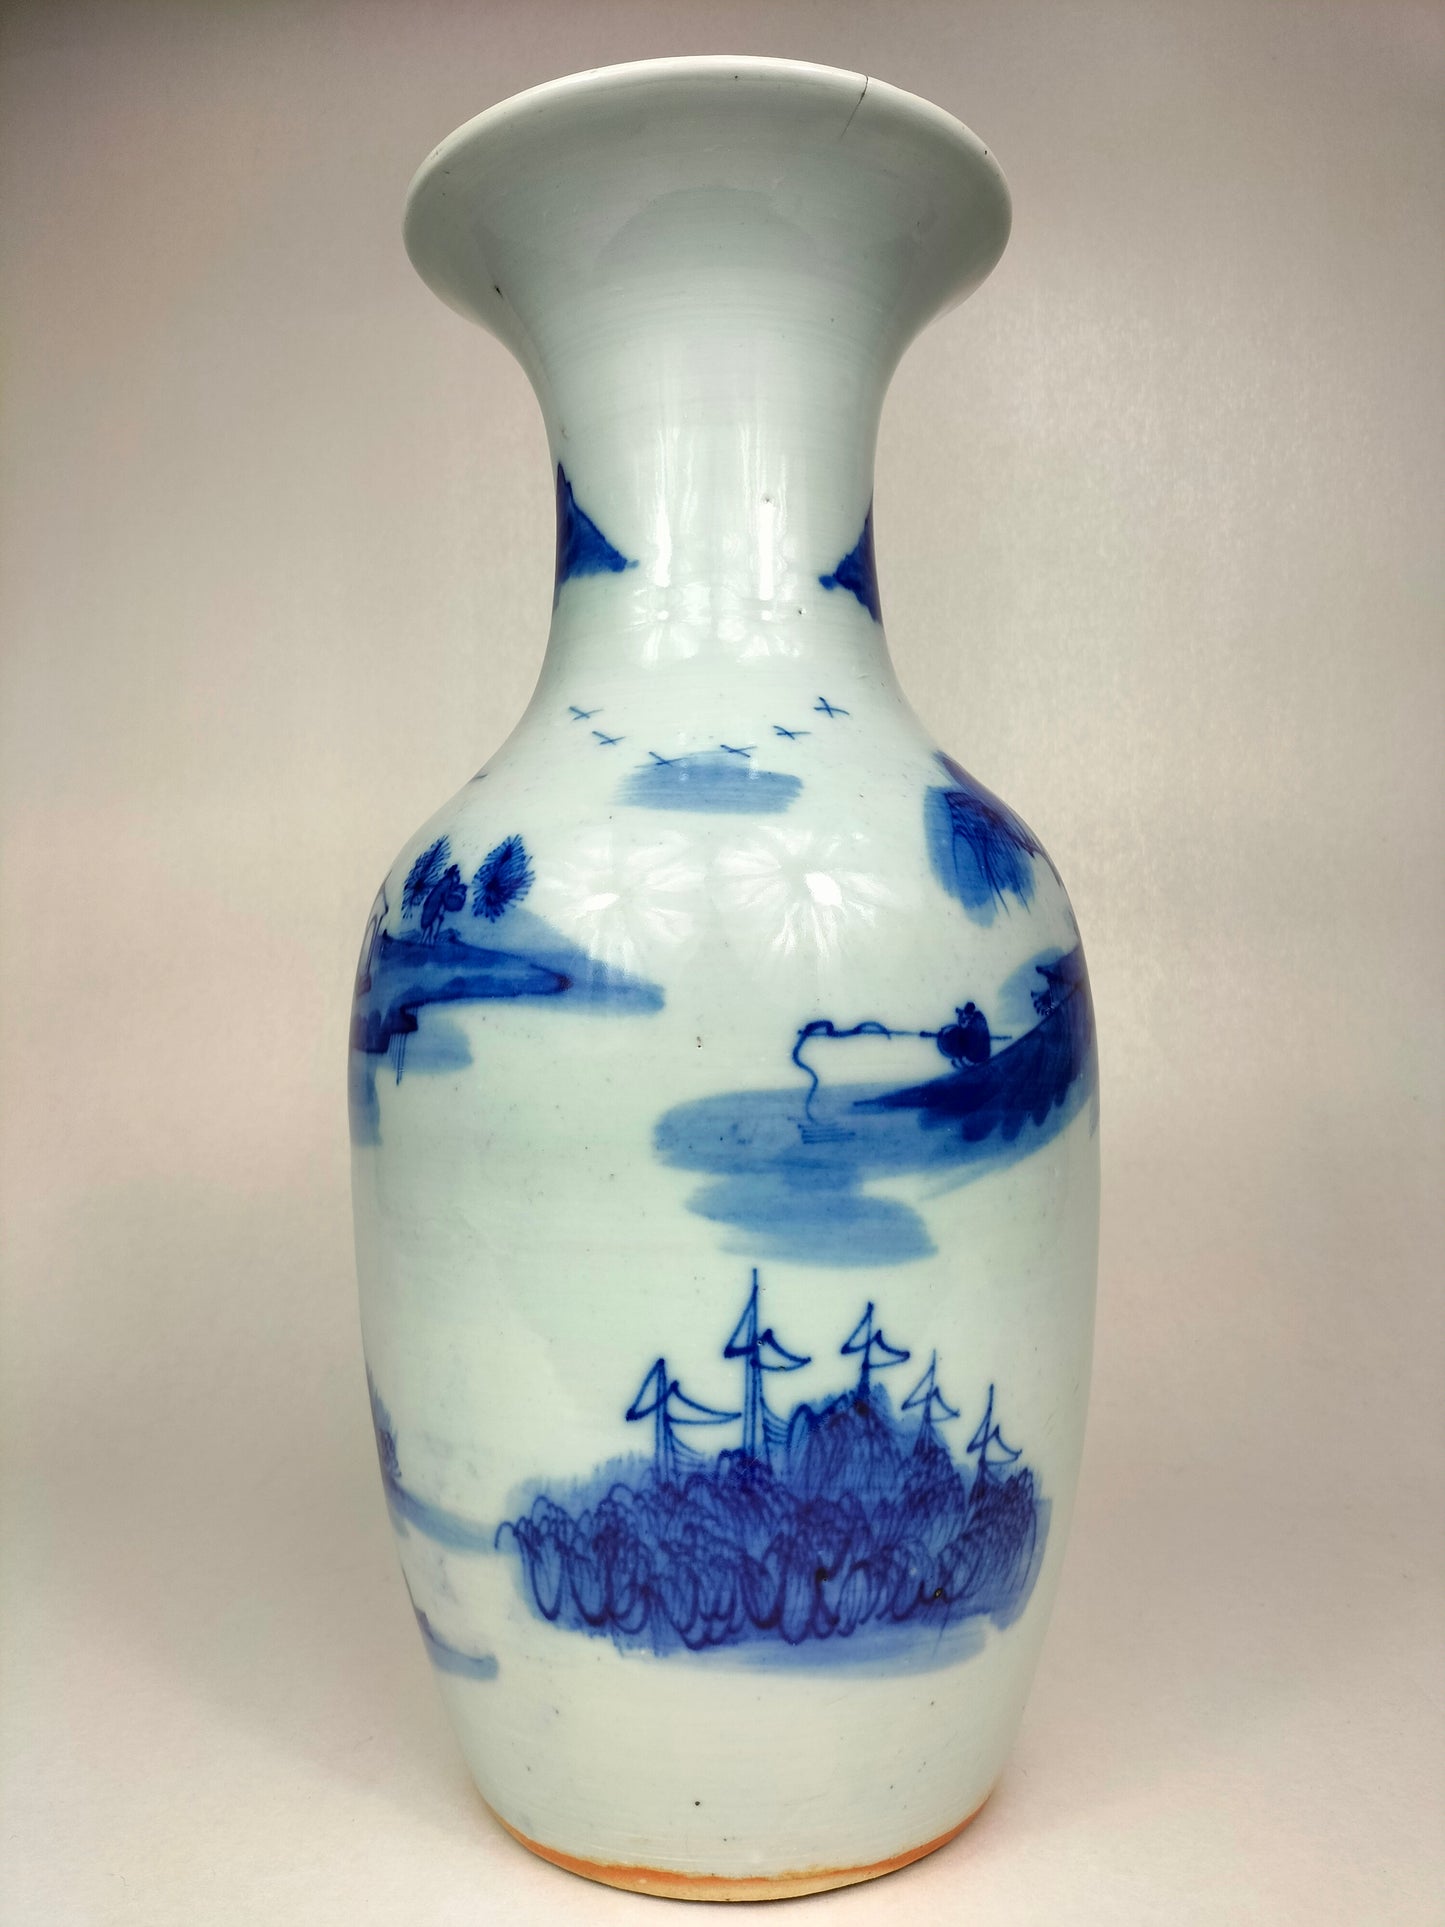 Chiếc bình cổ Trung Quốc được trang trí phong cảnh // Xanh trắng - Nhà Thanh - thế kỷ 19